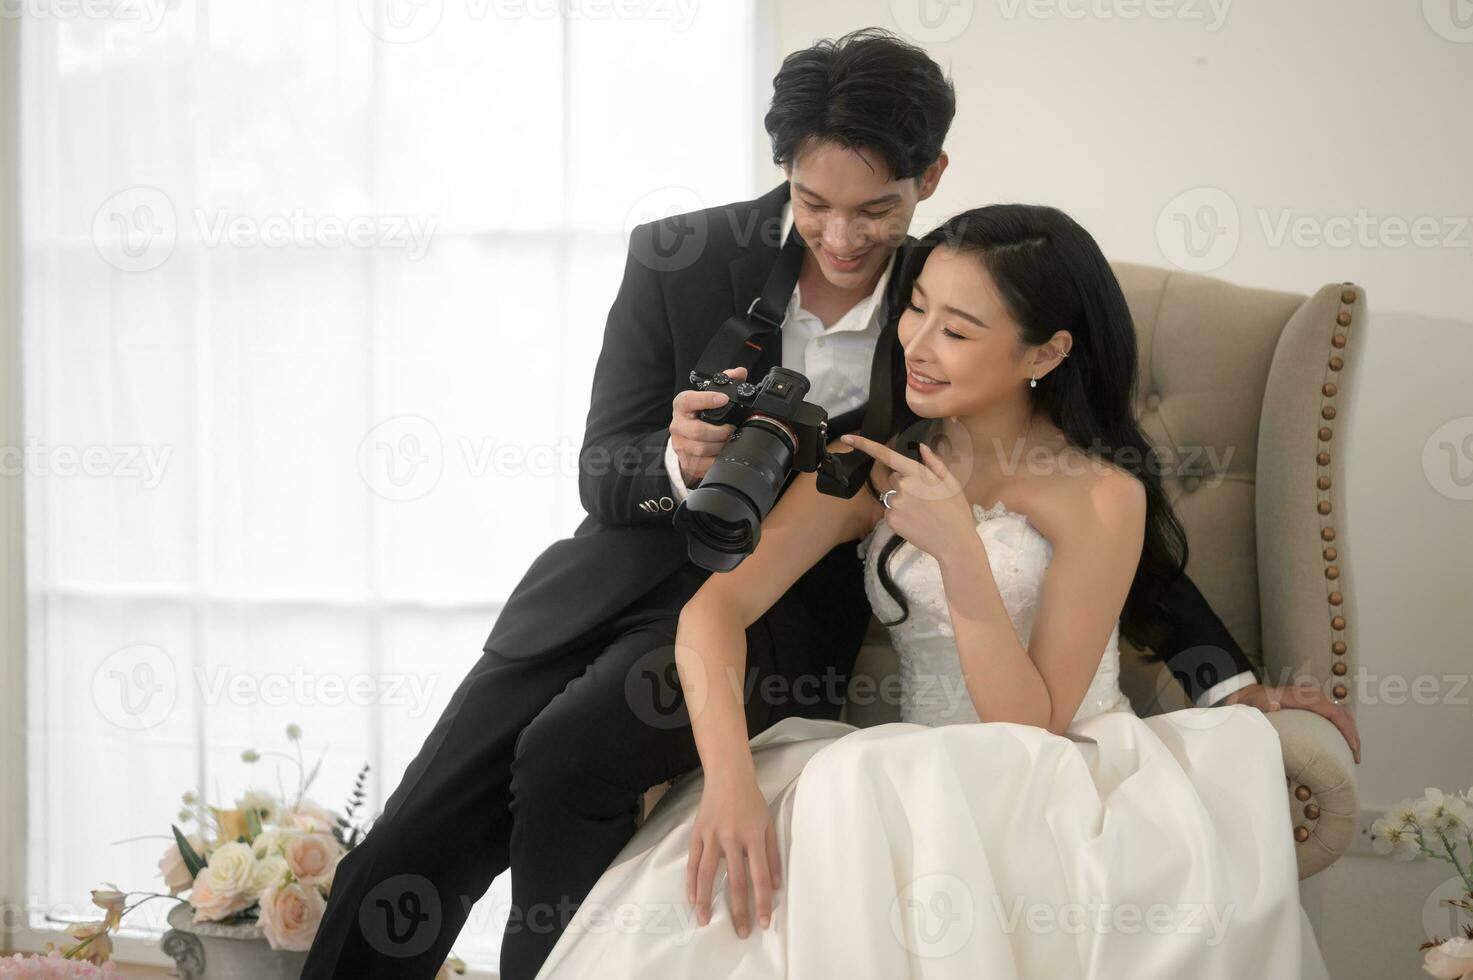 brudgum tar bilder av skön brud för bröllop ceremoni, kärlek ,romantisk och bröllop förslag begrepp. foto